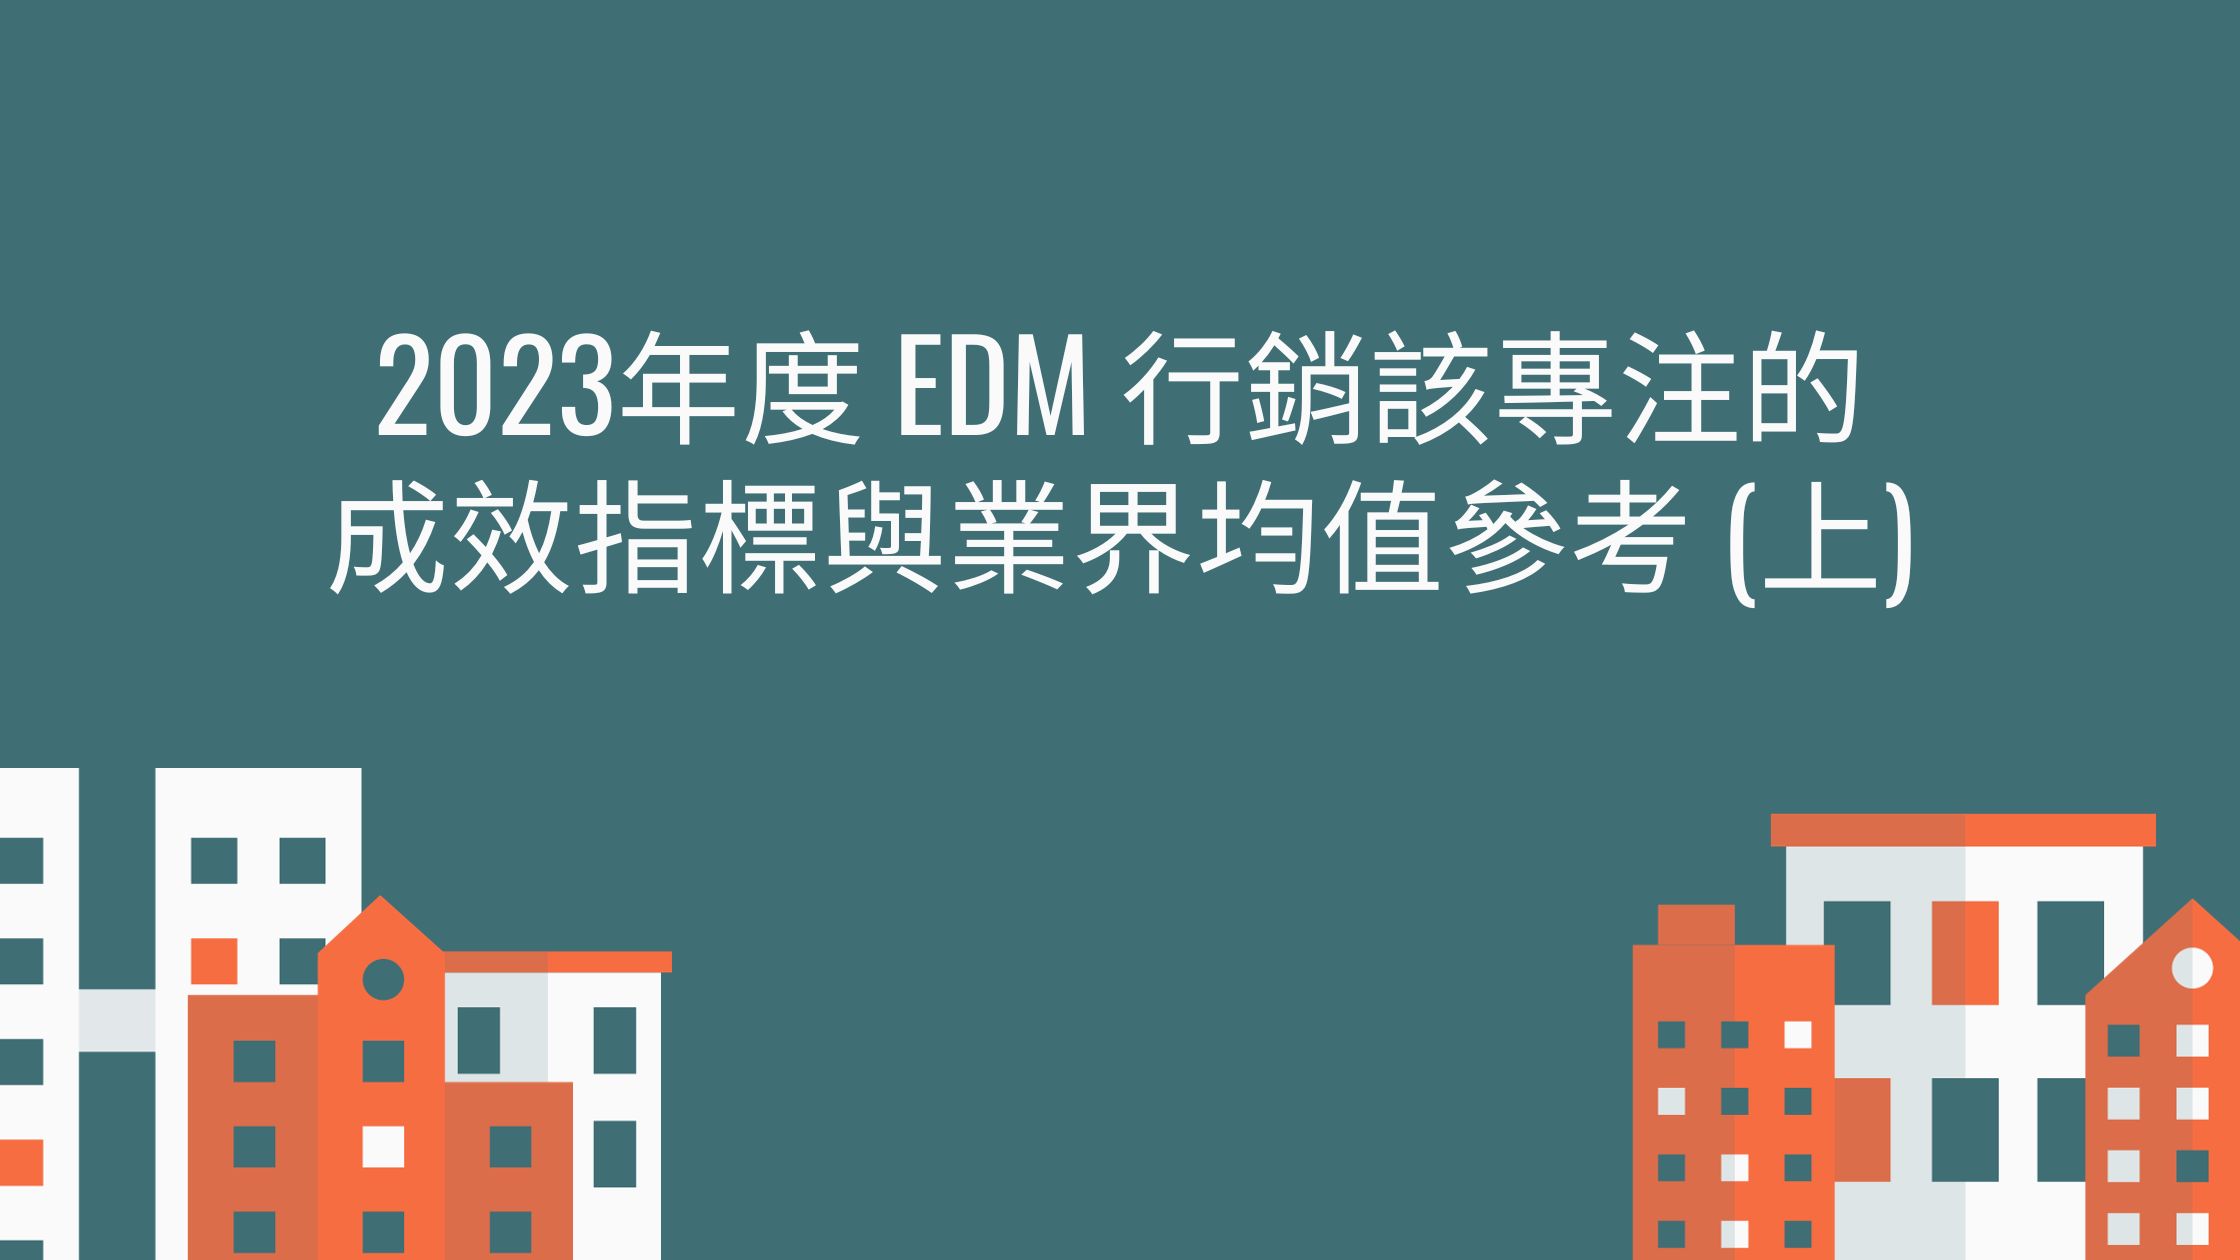 2023年度 EDM 行銷該專注的成效指標與業界均值參考 (上)